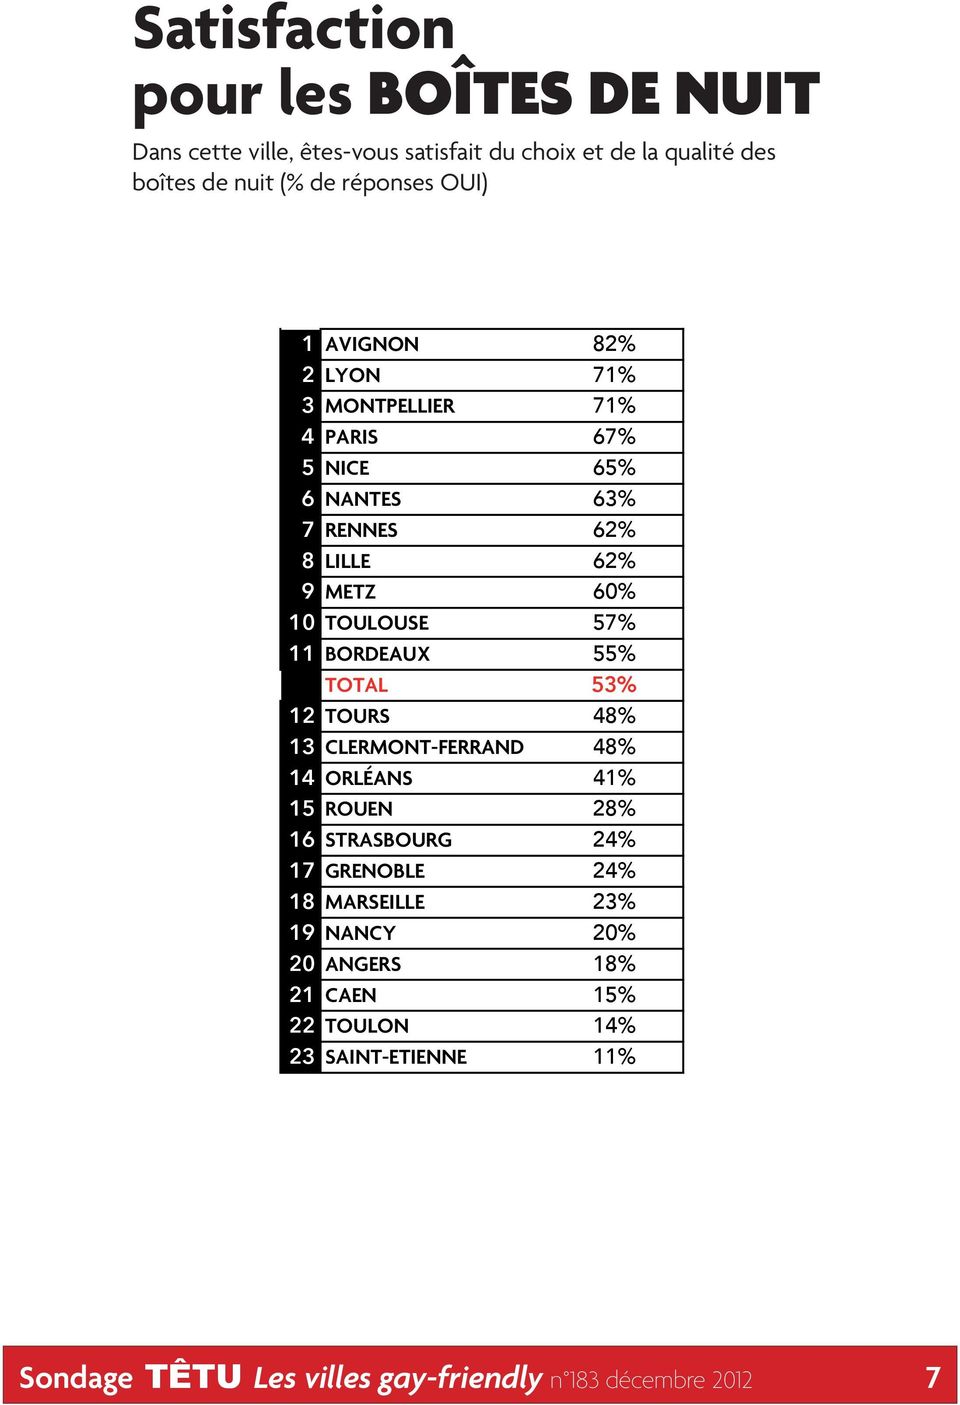 11 BORDEAUX 55% TOTAL 53% 12 TOURS 48% 13 CLERMONT-FERRAND 48% 14 ORLÉANS 41% 15 ROUEN 28% 16 STRASBOURG 24% 17 GRENOBLE 24% 18